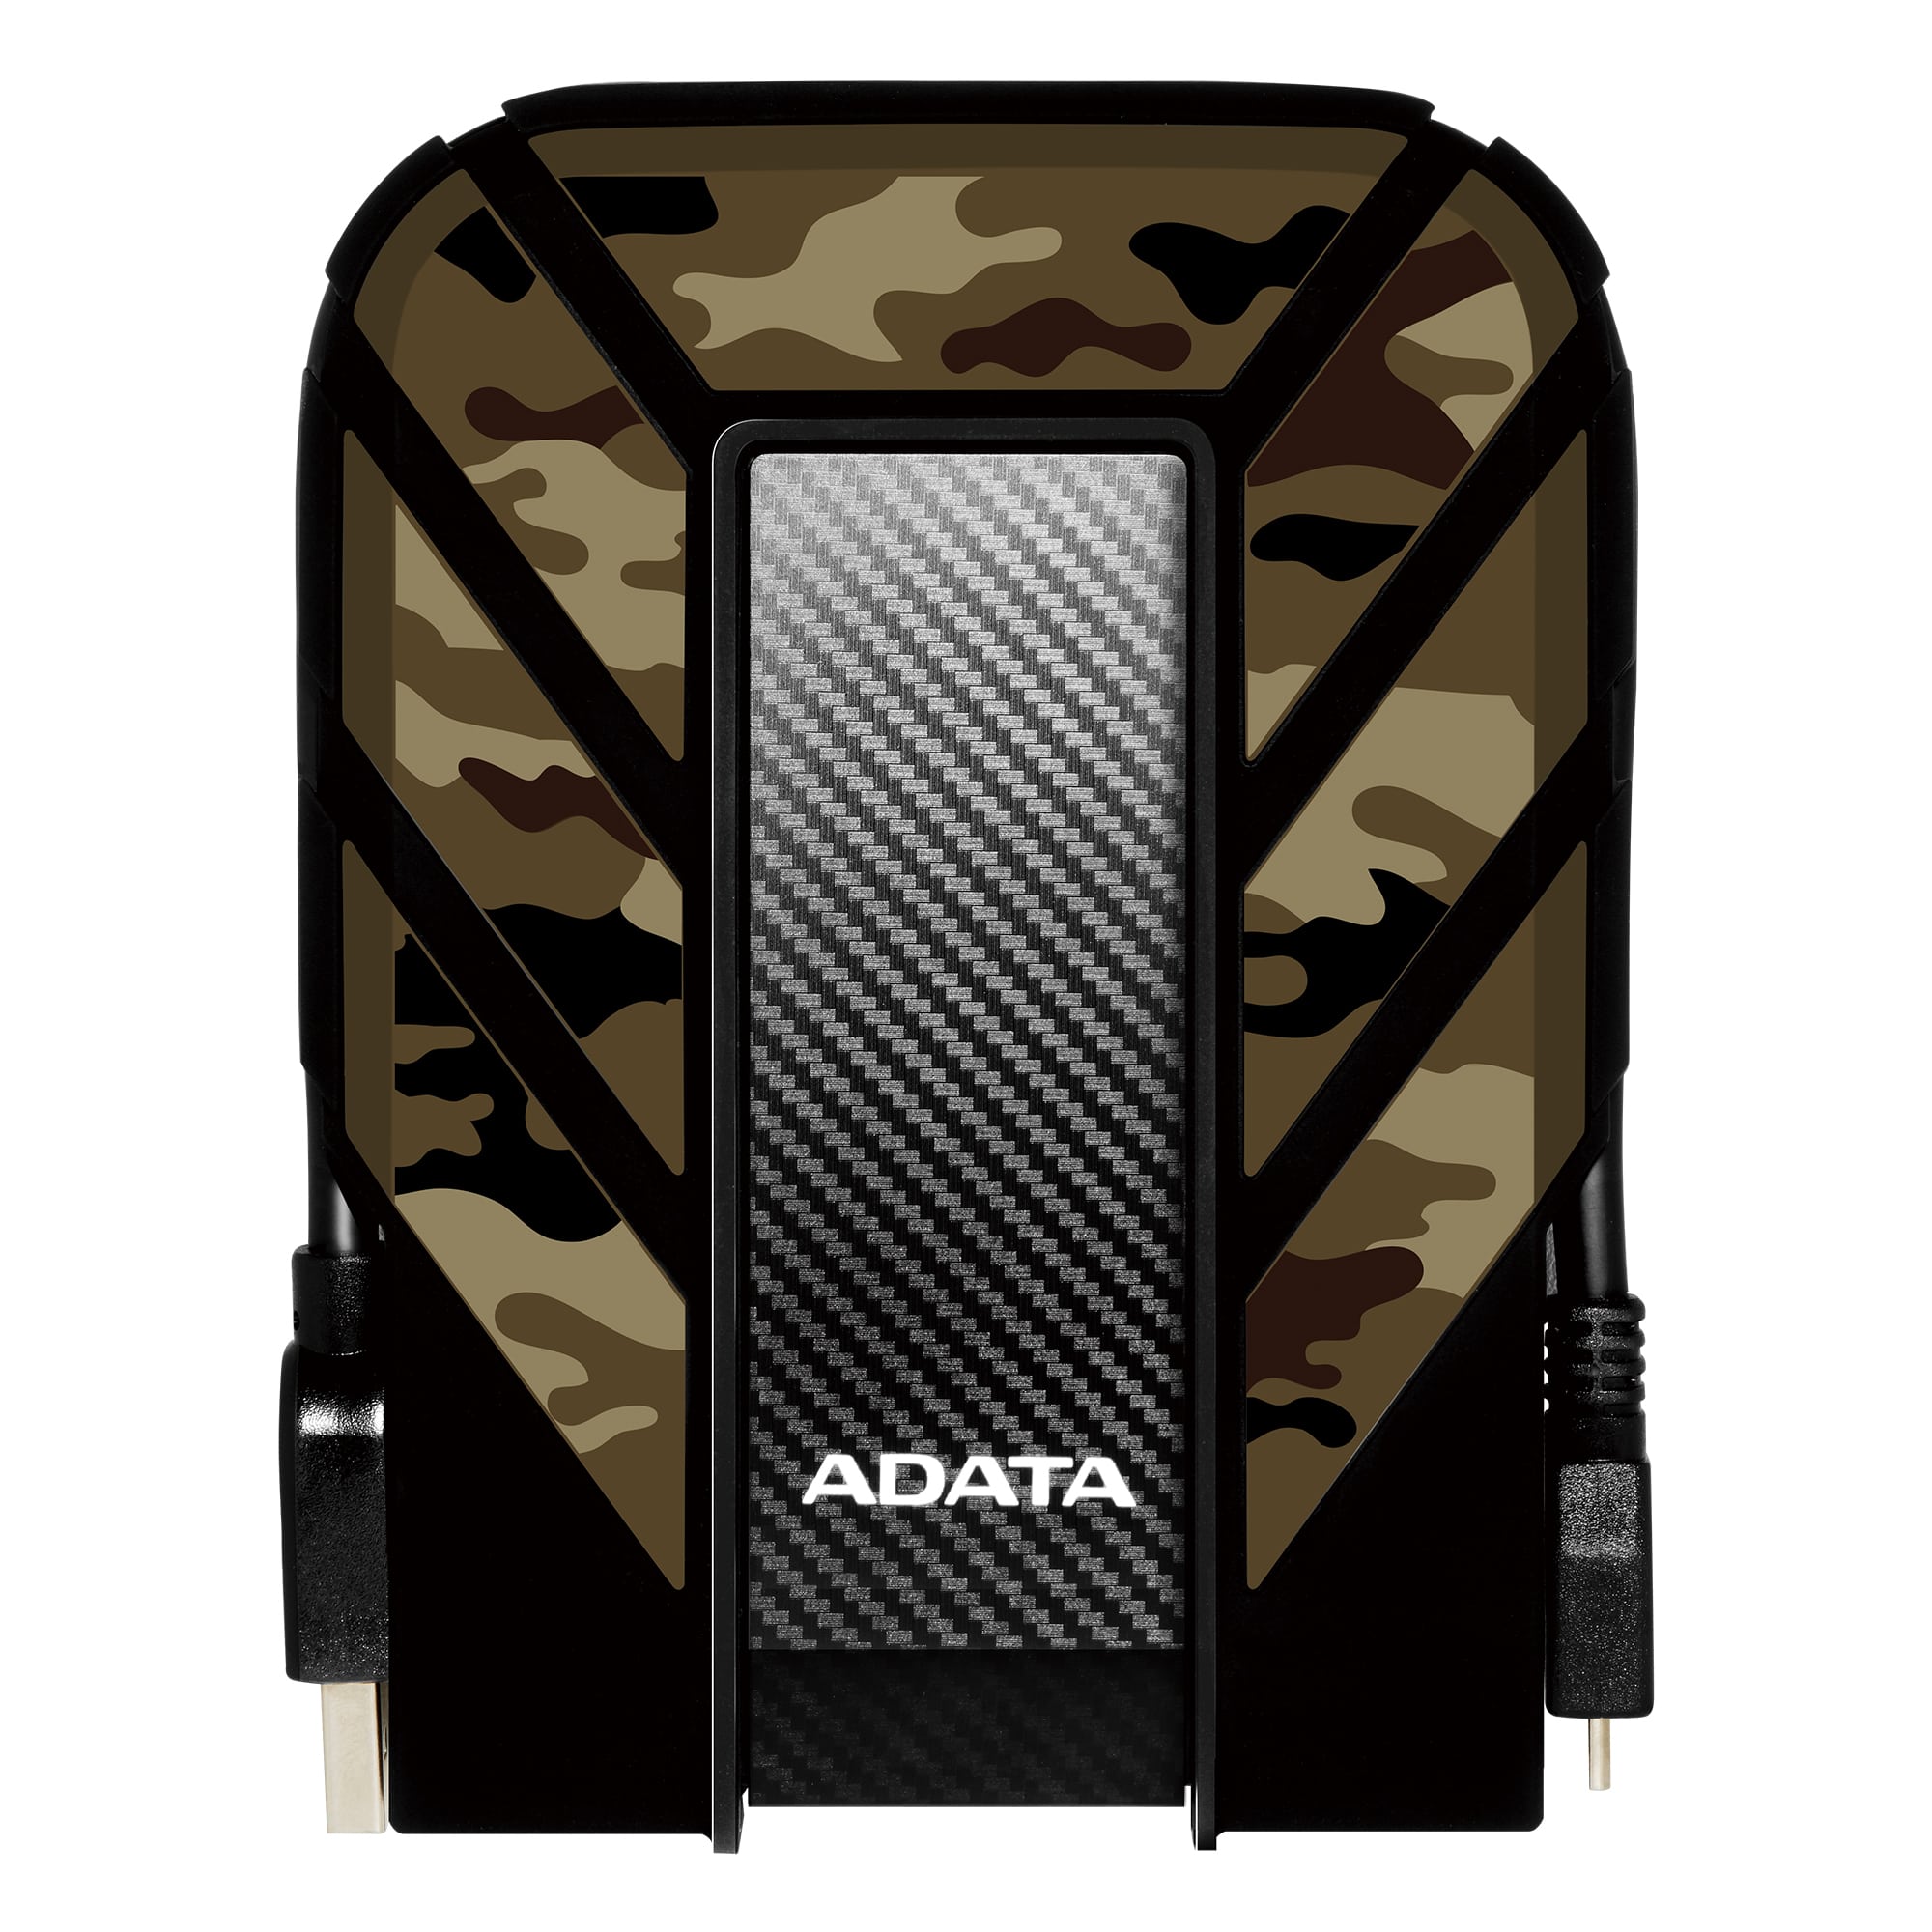 ADATA HD710MP 2TB, AHD710MP-2TU31-CCF ADATA Externí HDD 2TB 2,5" USB 3.1 DashDrive Durable HD710M Pro, kamufláž (gumový, nárazu/vodě/prachu odolný)